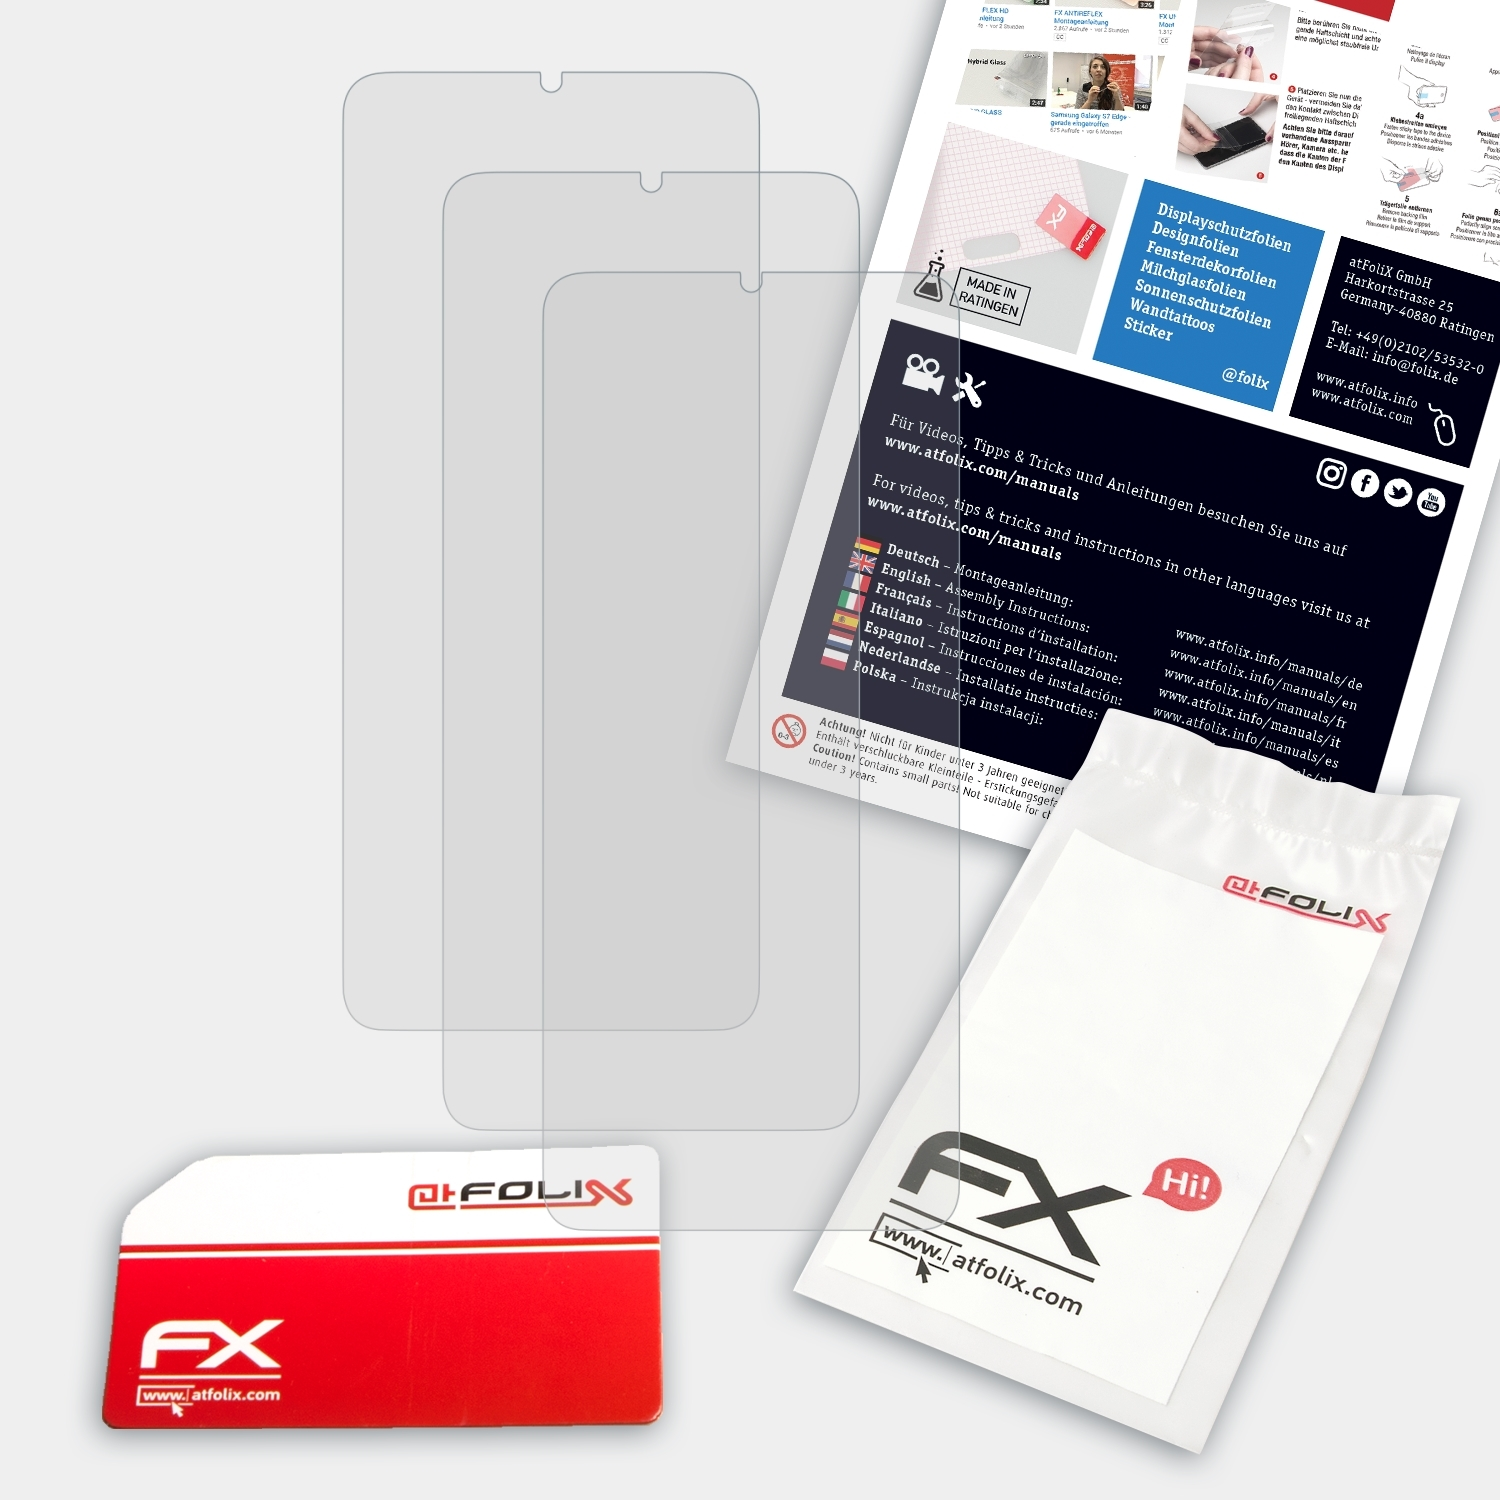 FX-Antireflex Samsung ATFOLIX A22 4G) Galaxy Displayschutz(für 3x